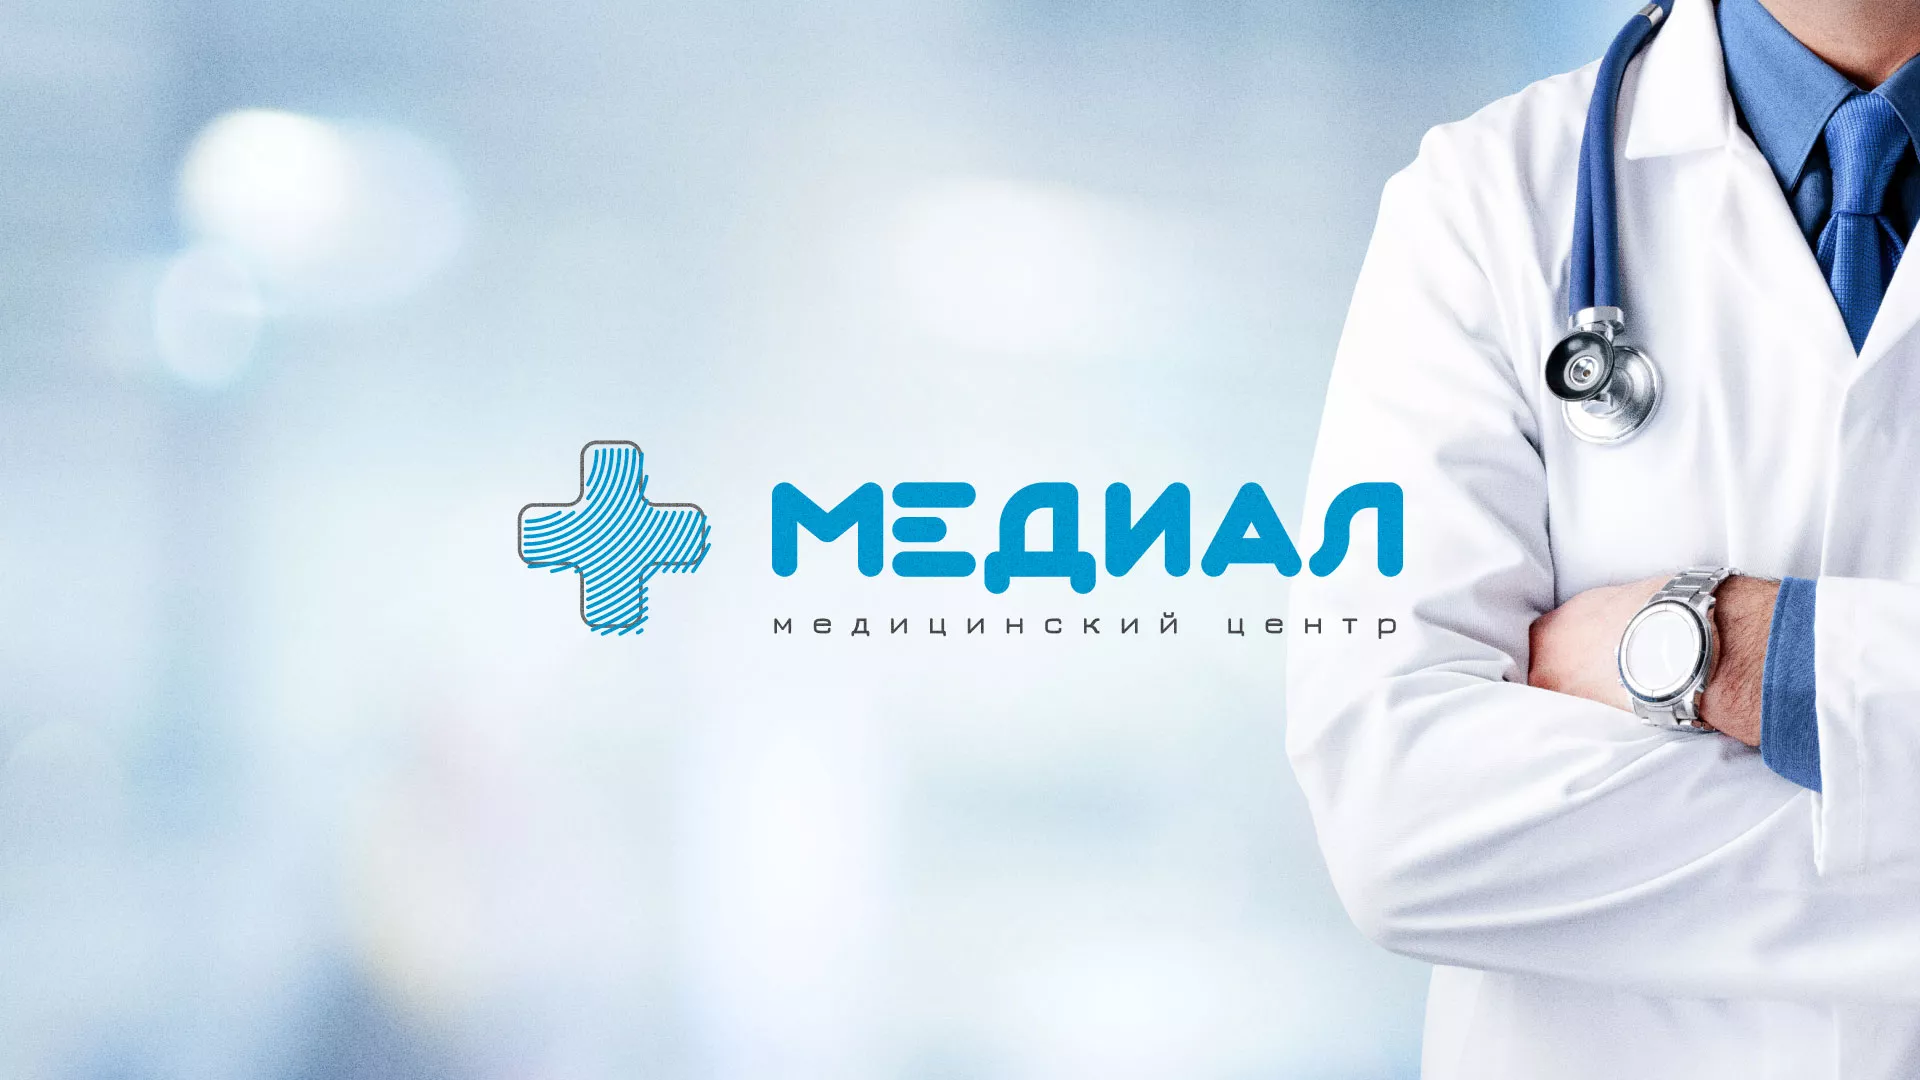 Создание сайта для медицинского центра «Медиал» в Вятских Полянах